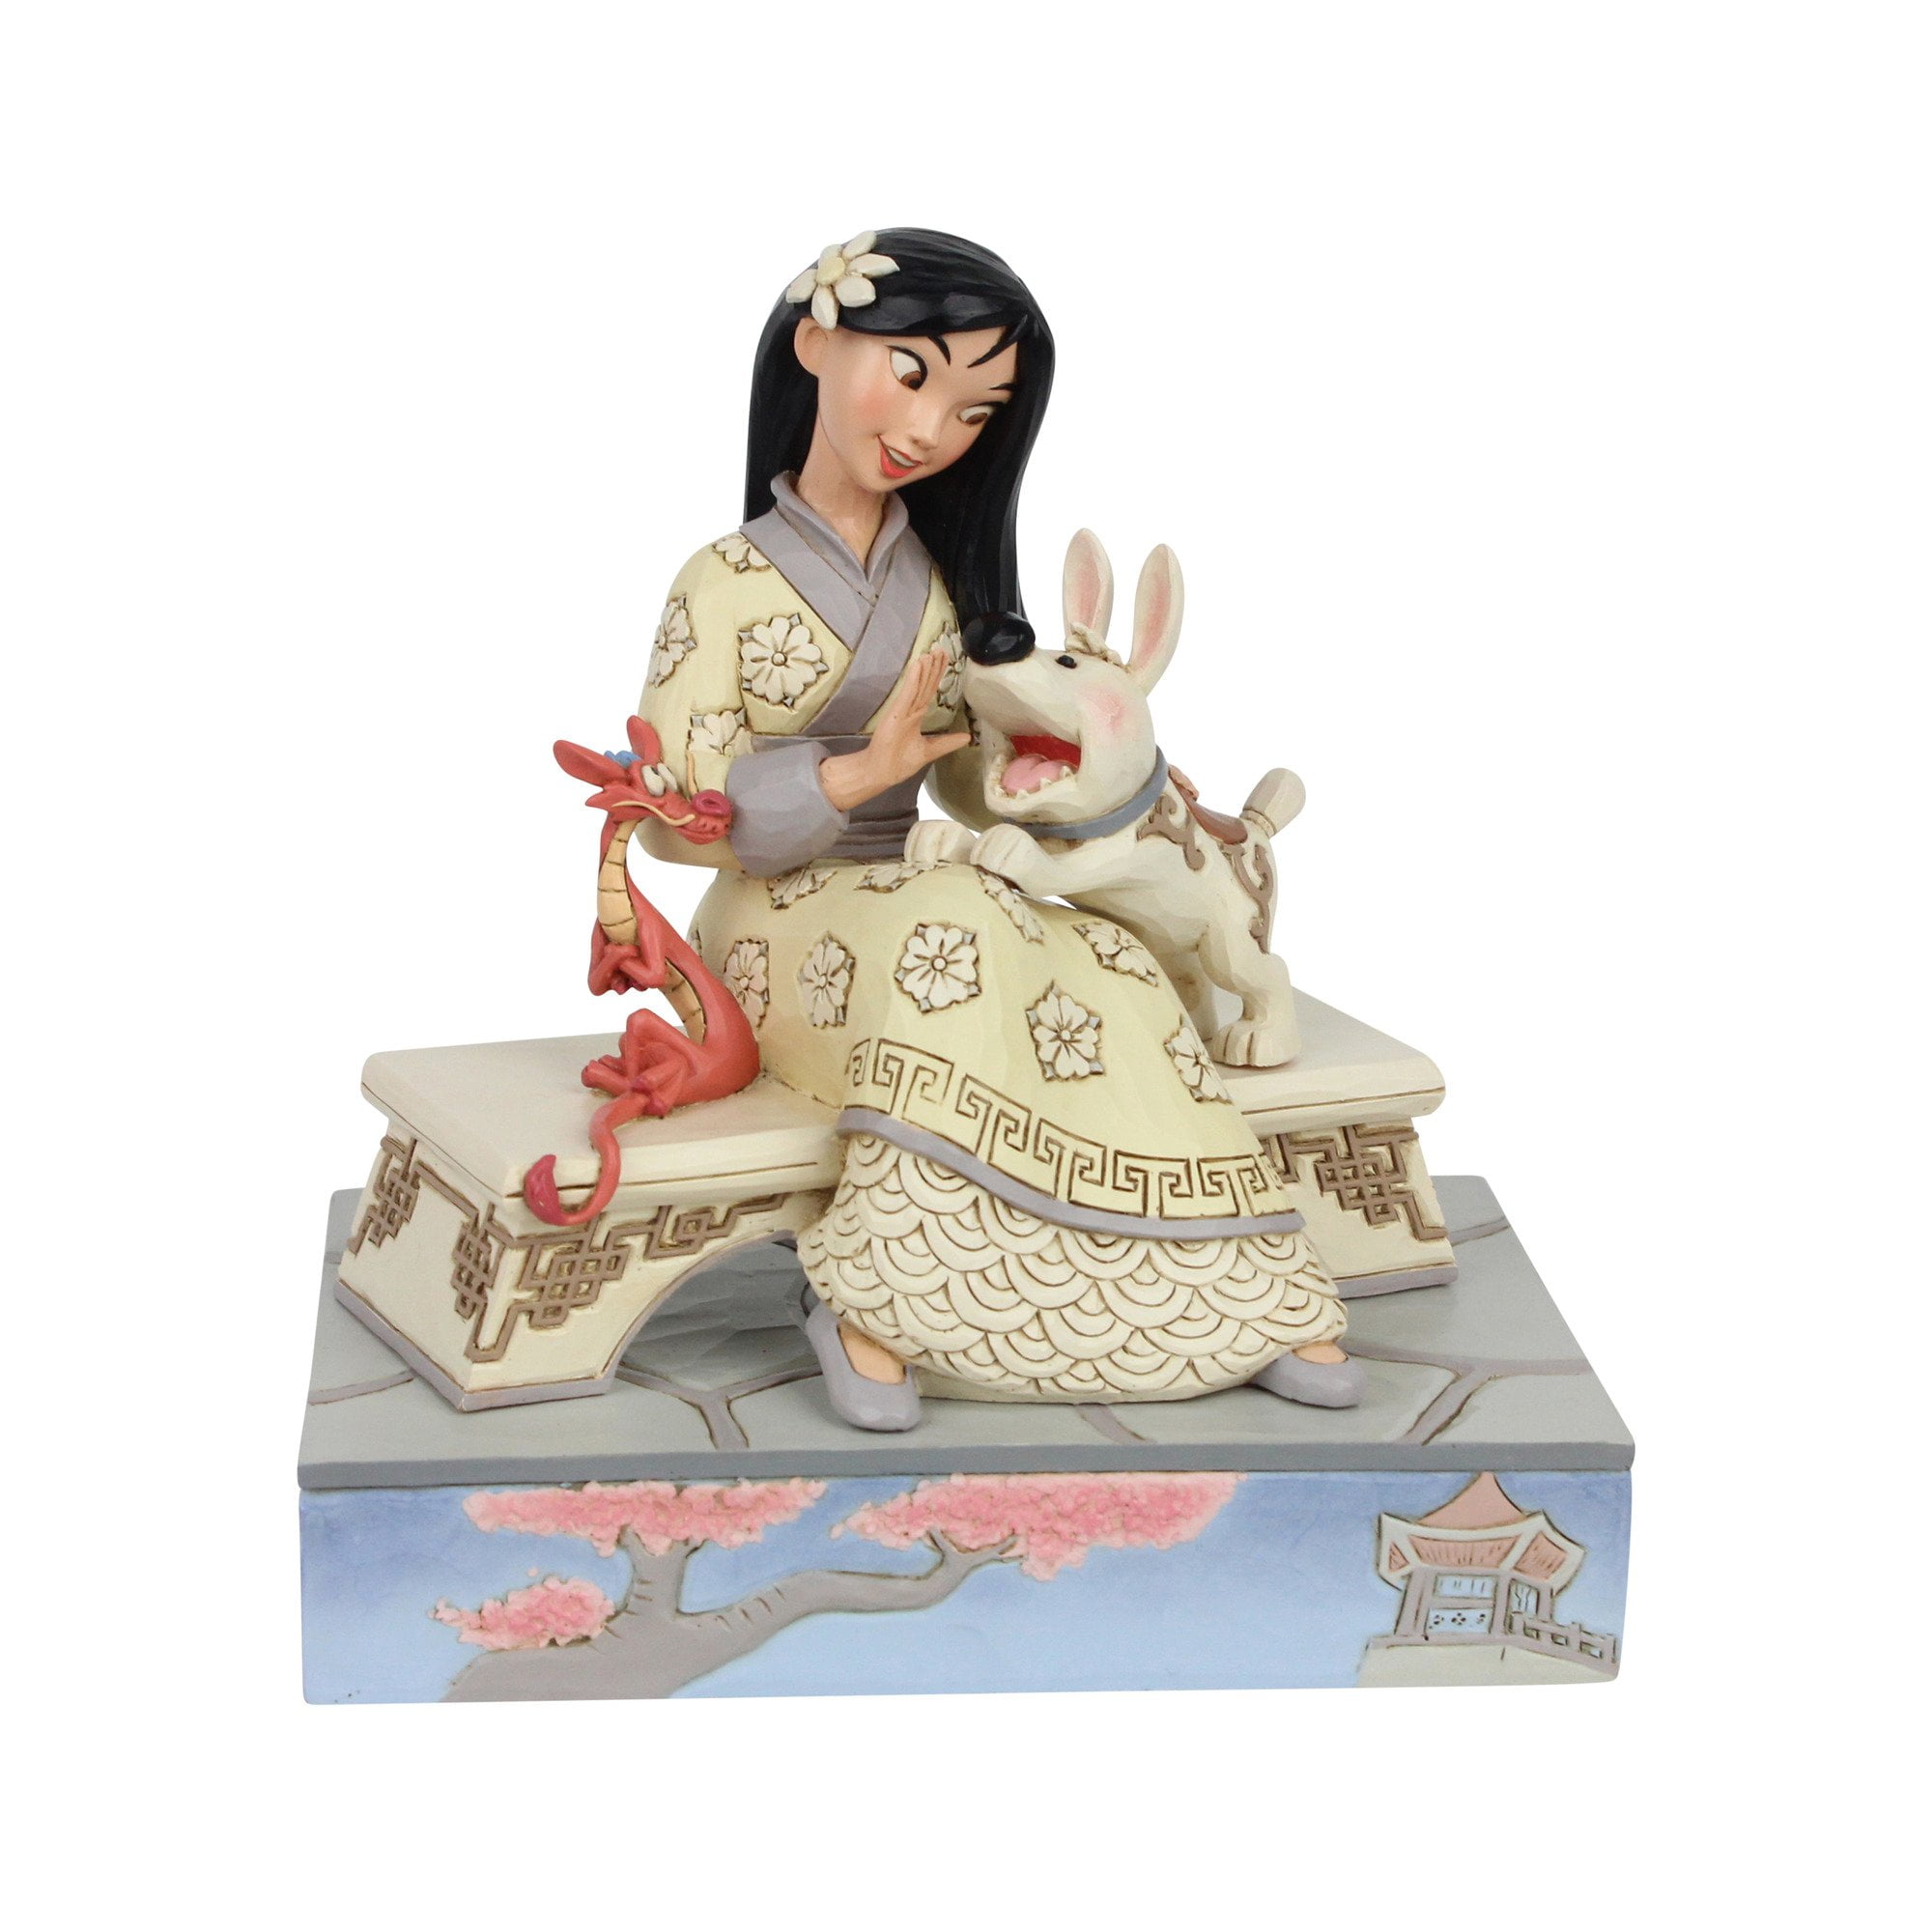 Jim Shore Disney Traditions White Woodland Pocahontas Figurine 6007062 